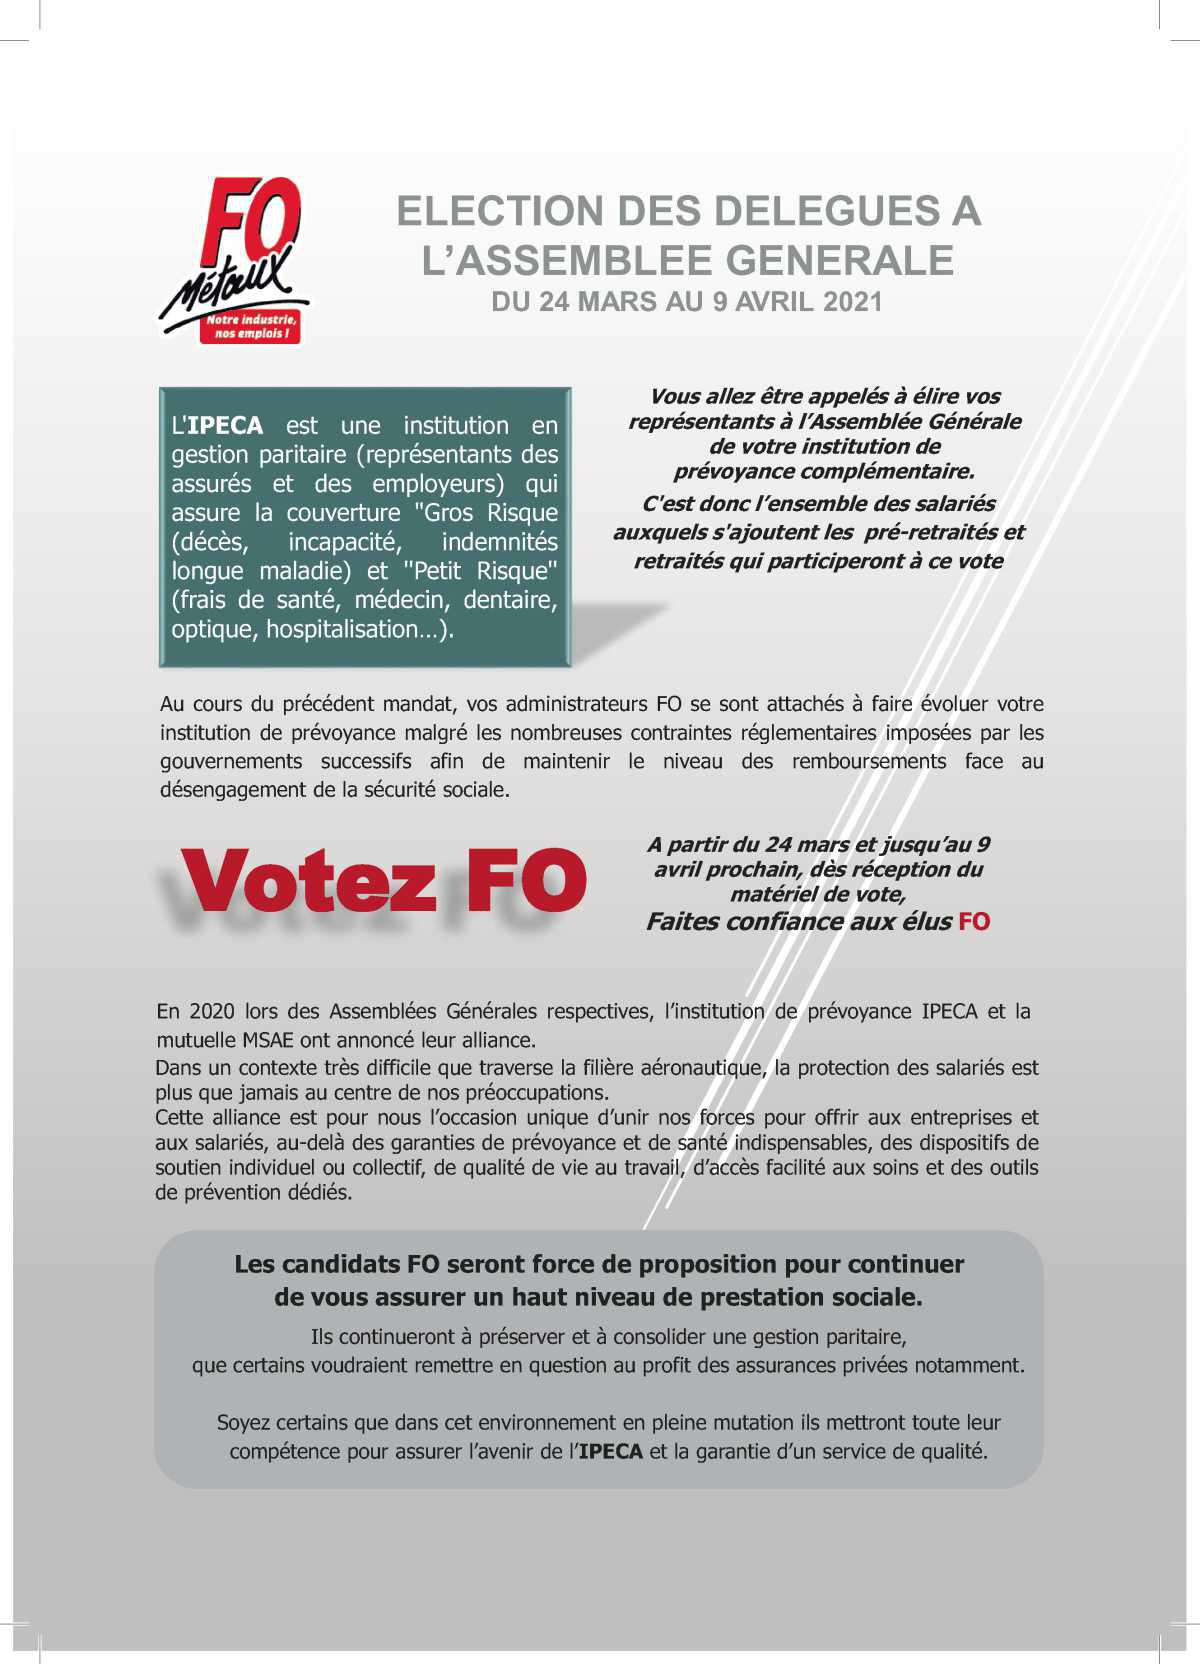 IPECA: Election des Délégués à l'assemblée Générale du 24 mars au 9 avril 2021